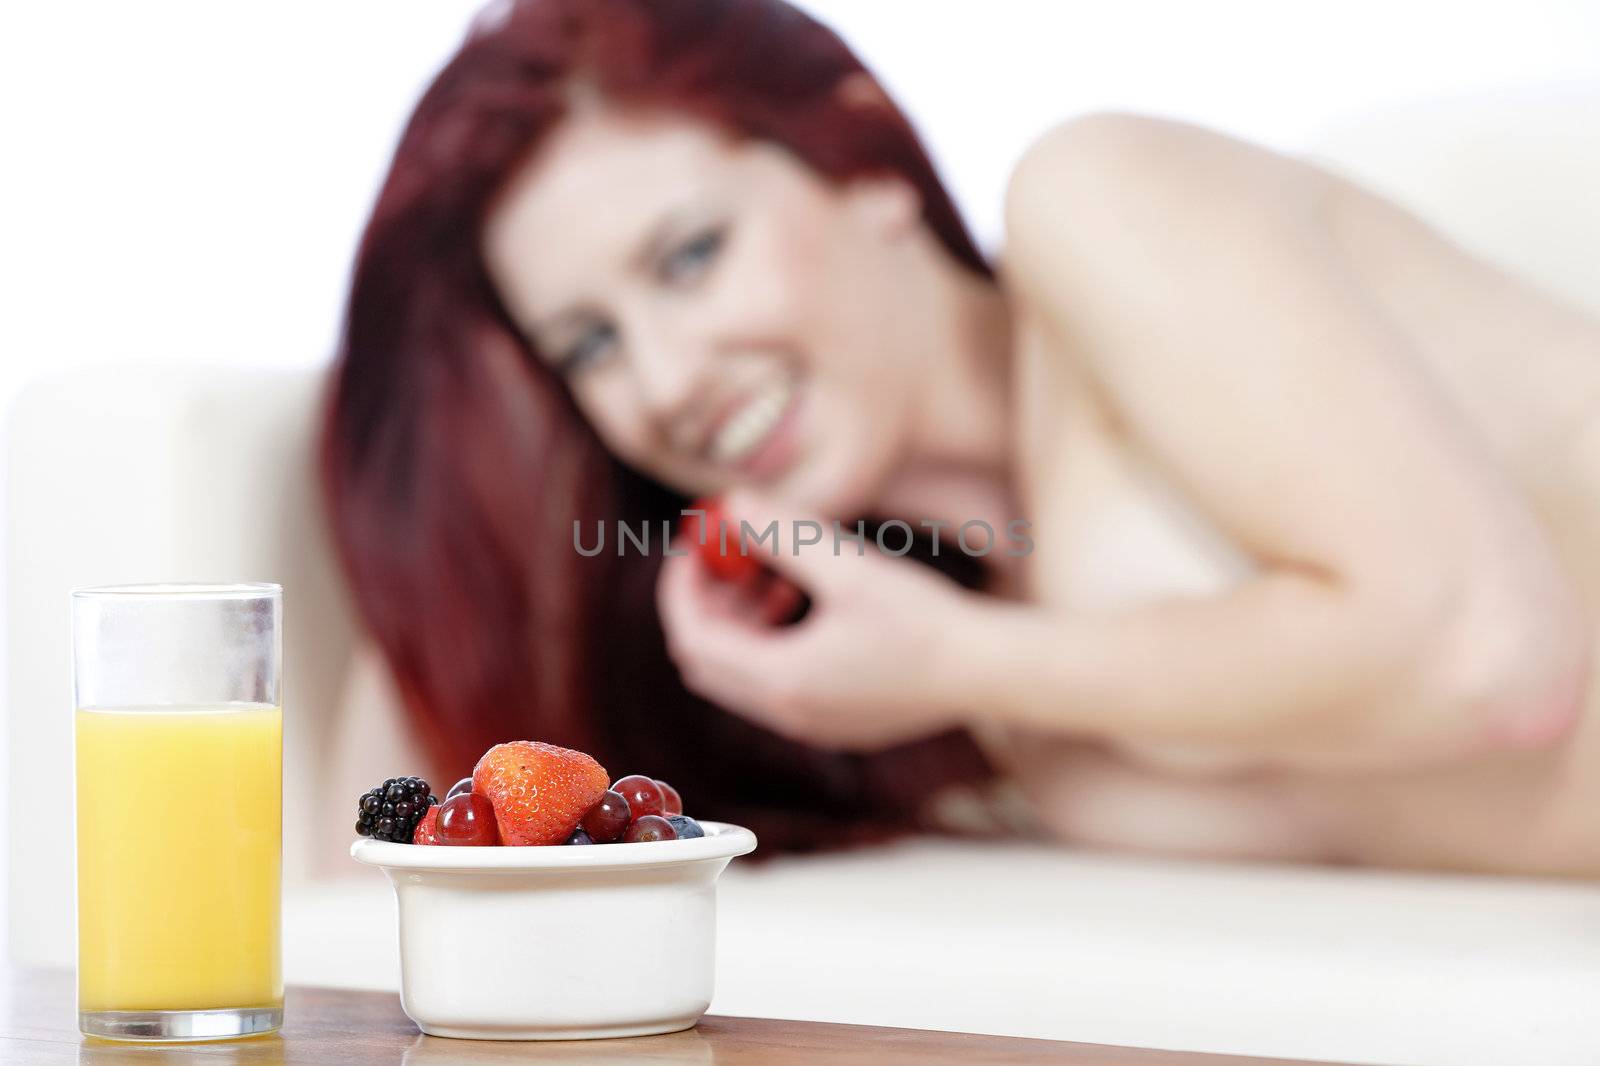 Fresh breakfast with woman in background by studiofi